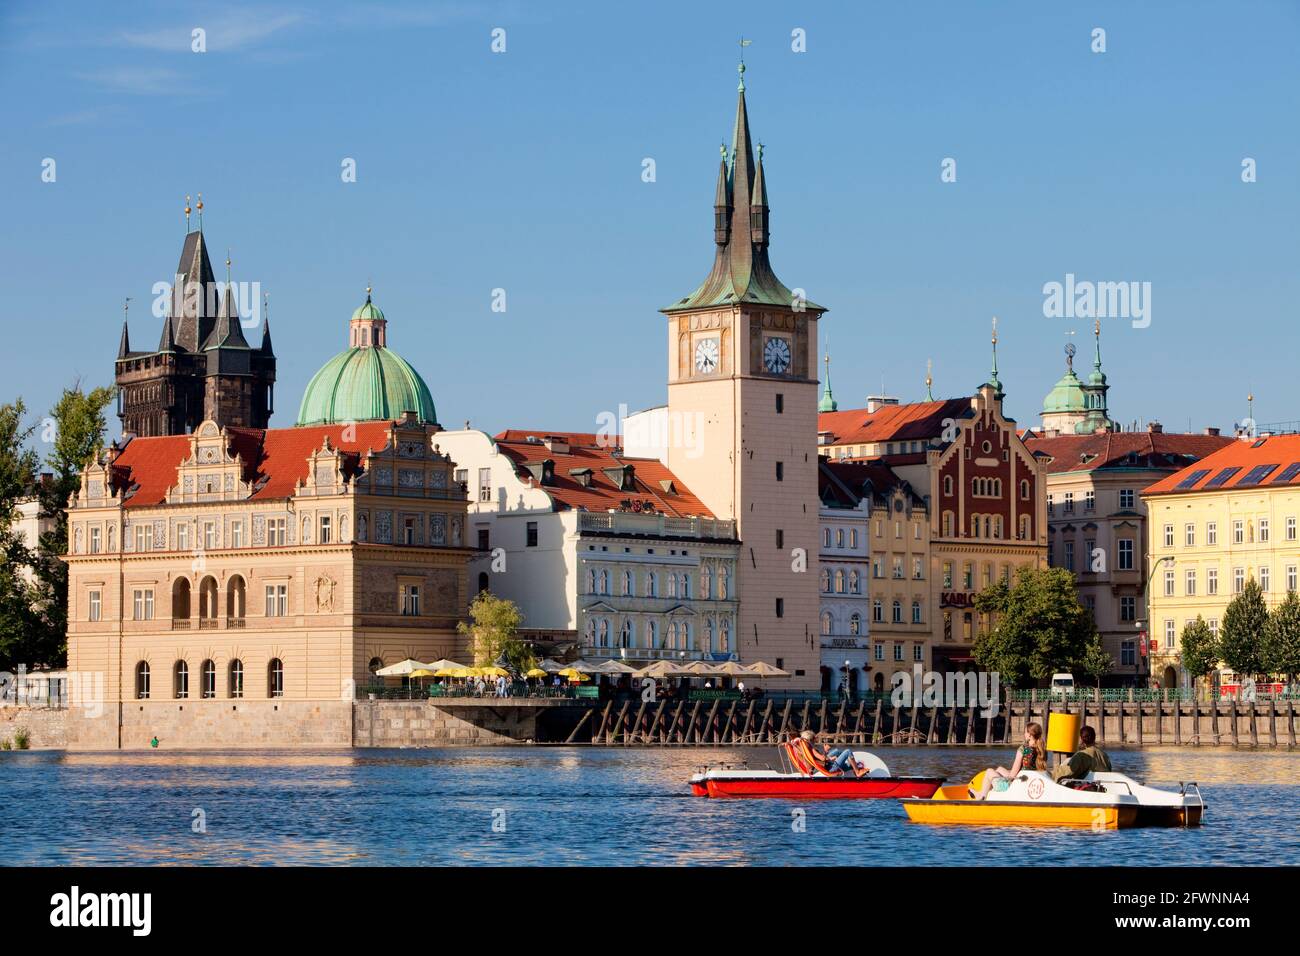 Czechia, Praga - le guglie della città vecchia e le barche di svago. Foto Stock